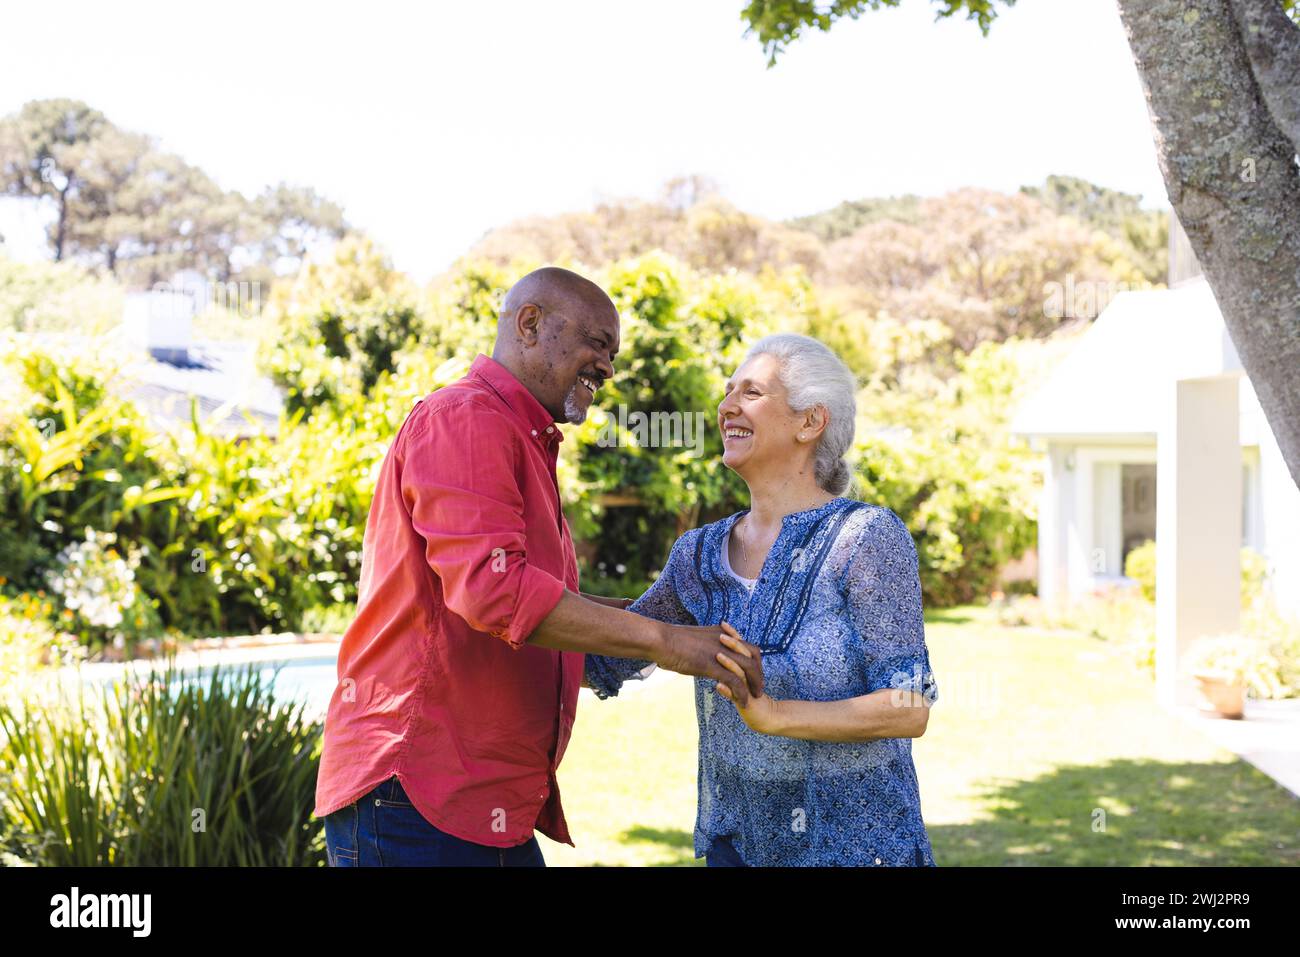 Coppia di anziani felice e variegata che balla nel giardino soleggiato Foto Stock